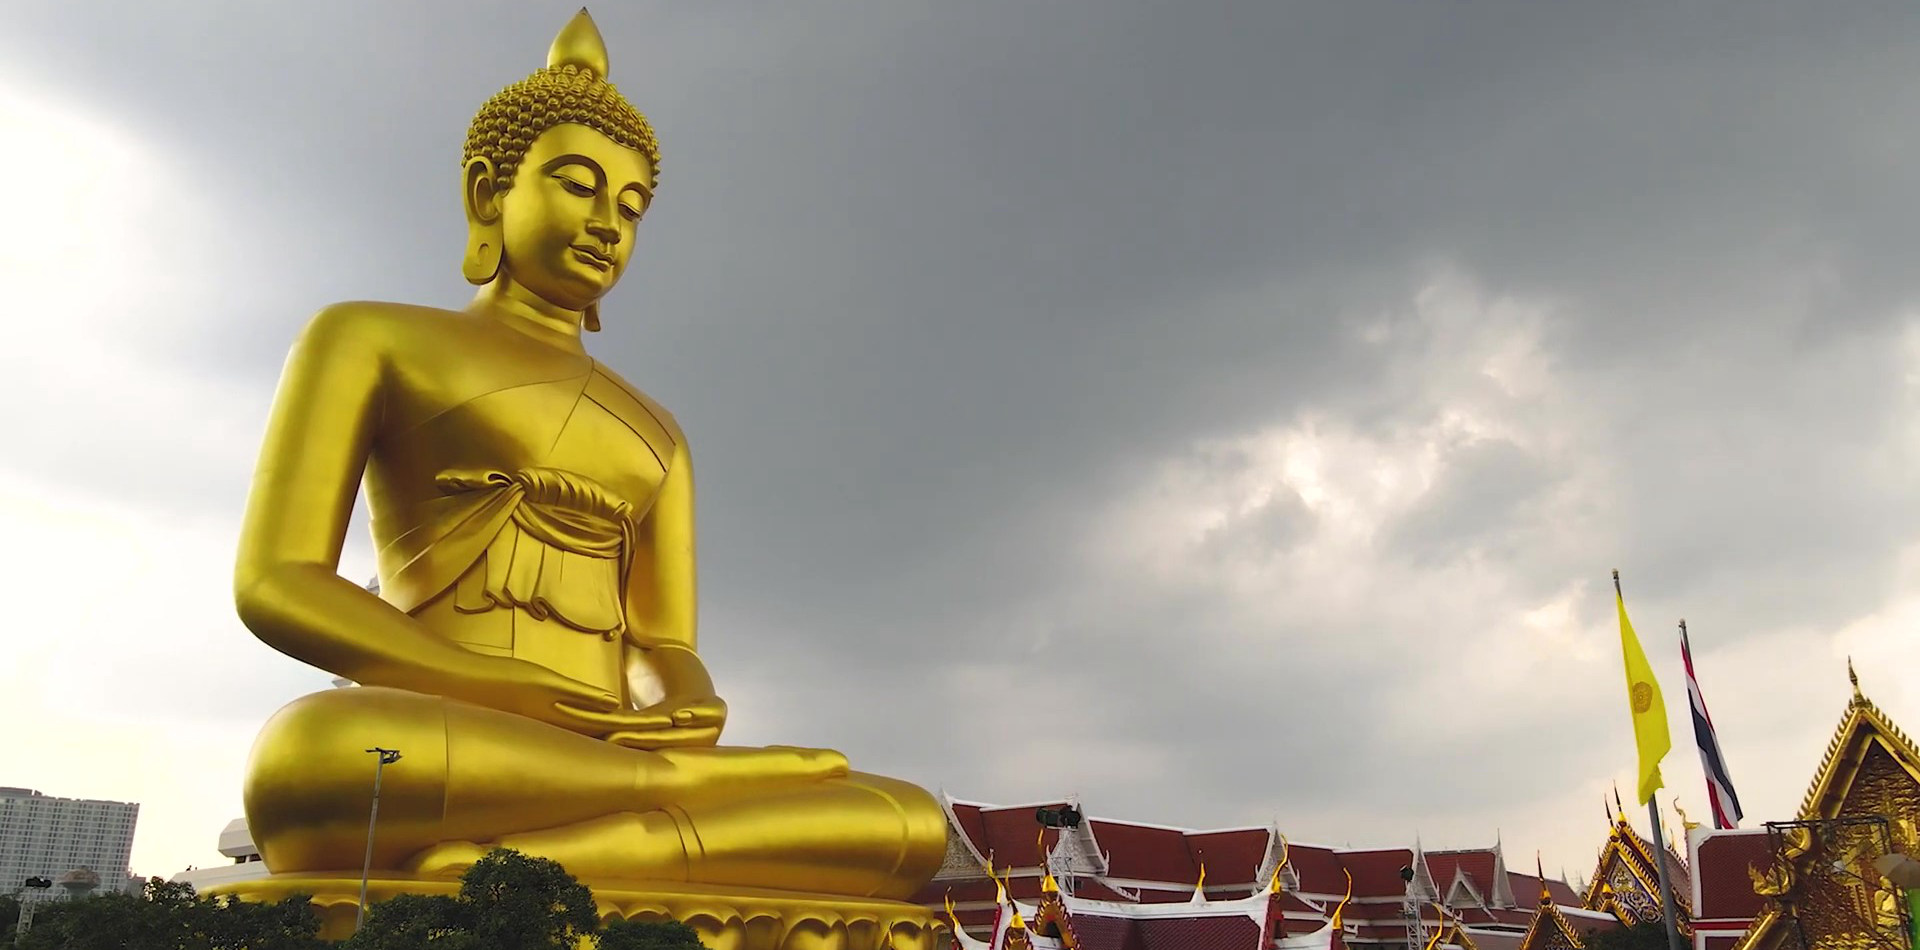 Golden bronze buddha statue, Seated Sakyamuni Buddha Statue, Wat paknam Bangkok Thailand.